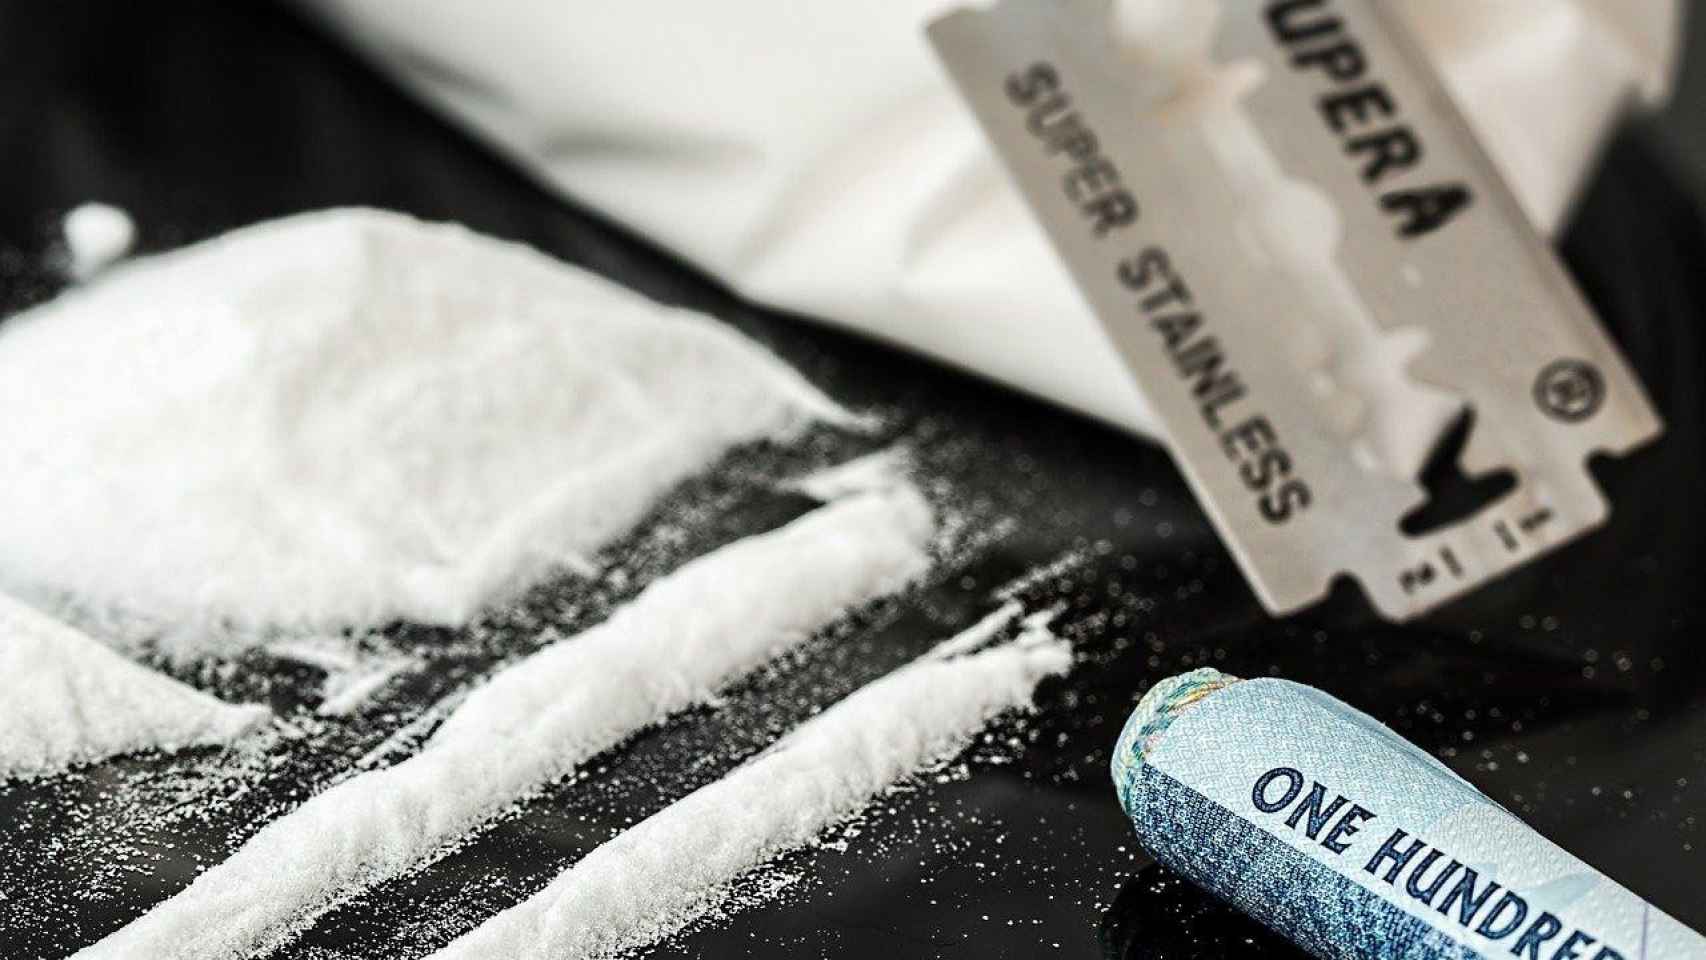 Rayas de cocaína, una de las drogas que llevaba el conductor / PIXABAY